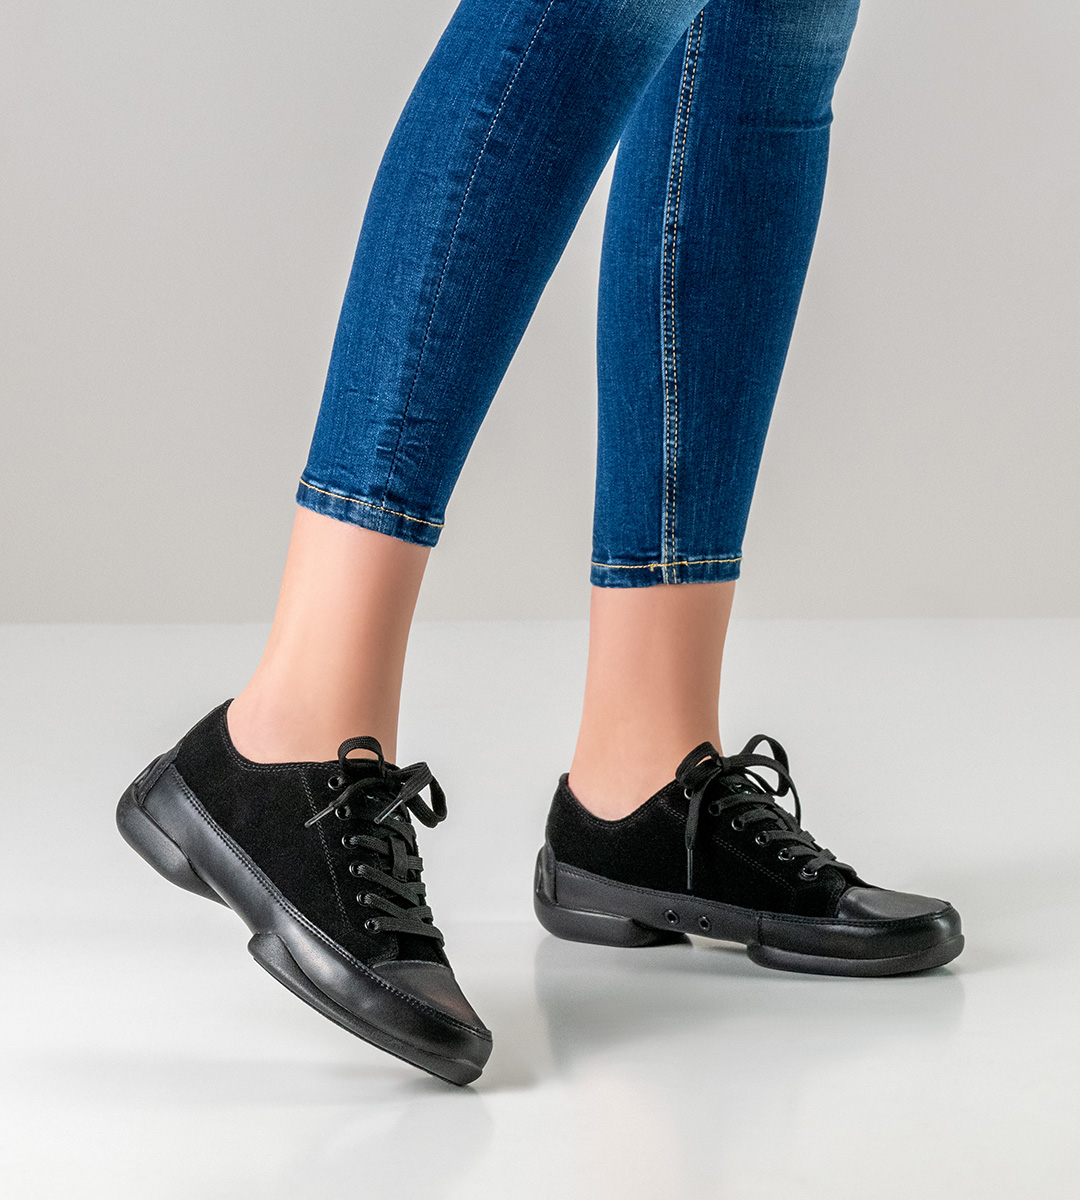 black ladies dance shoe sneaker with split sole by Suny